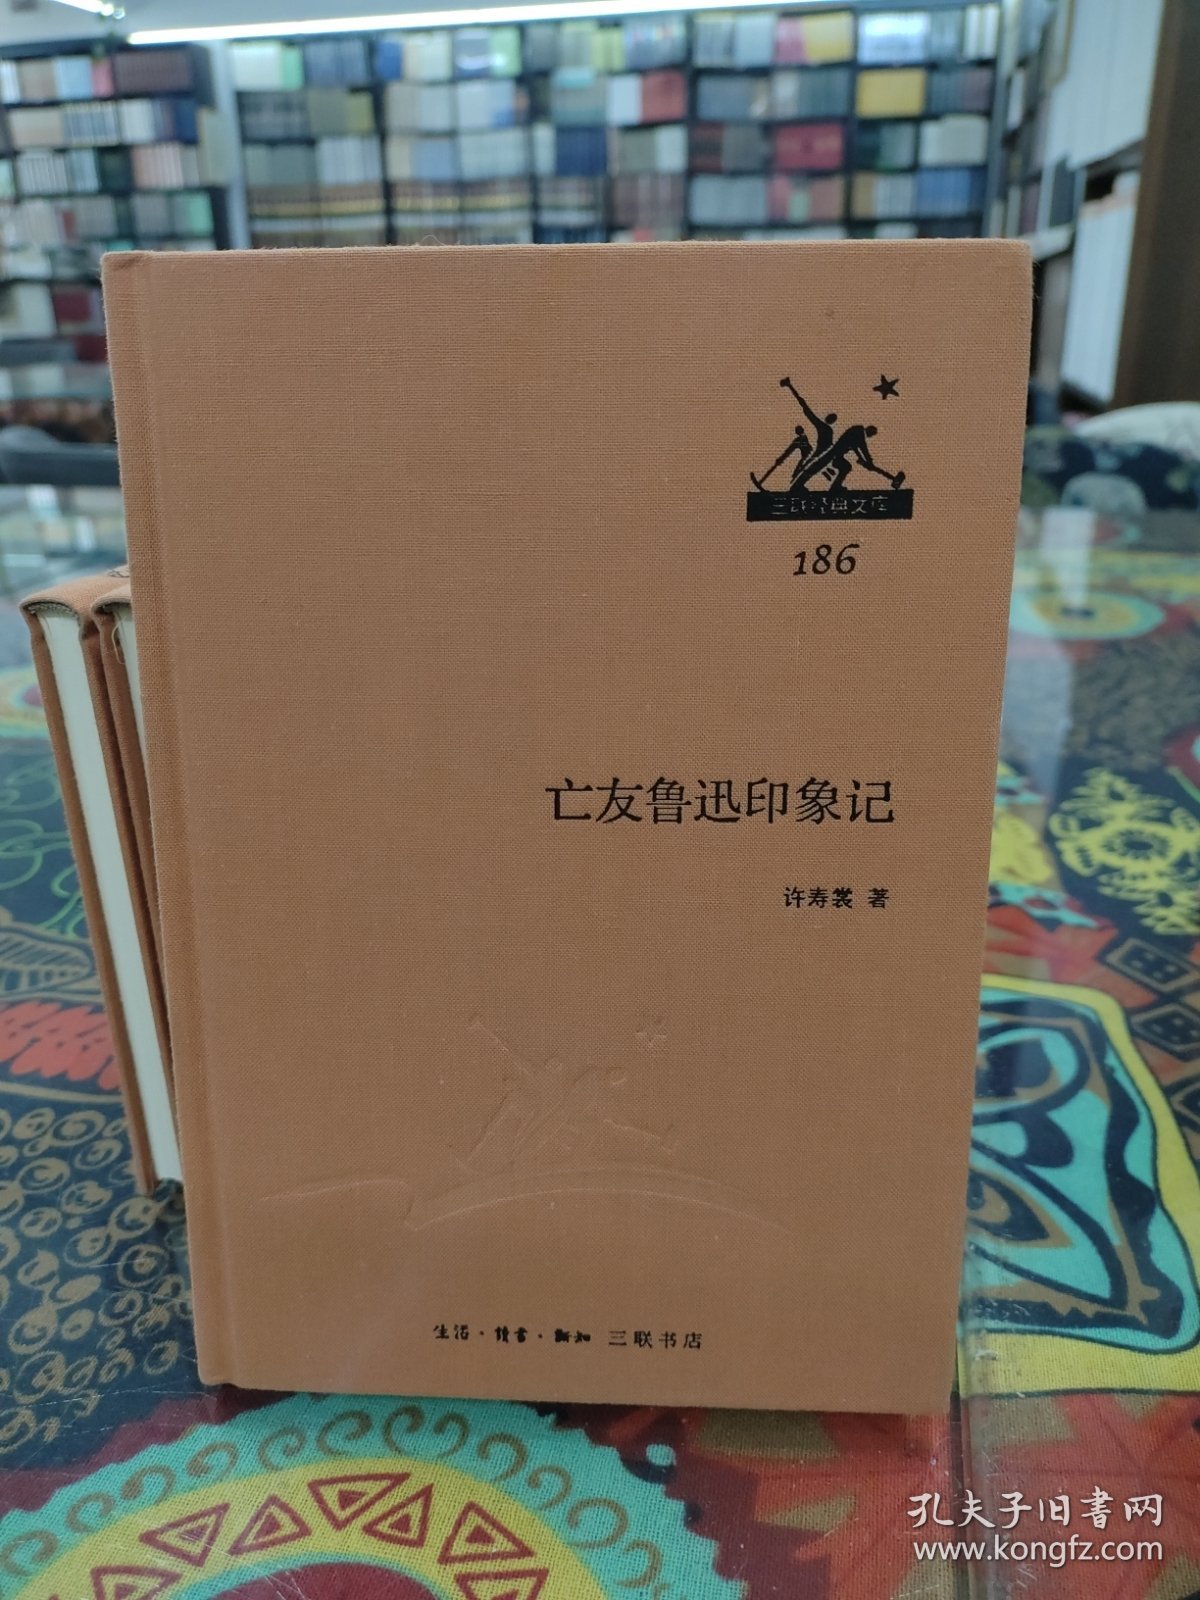 亡友鲁迅印象记/三联经典文库186